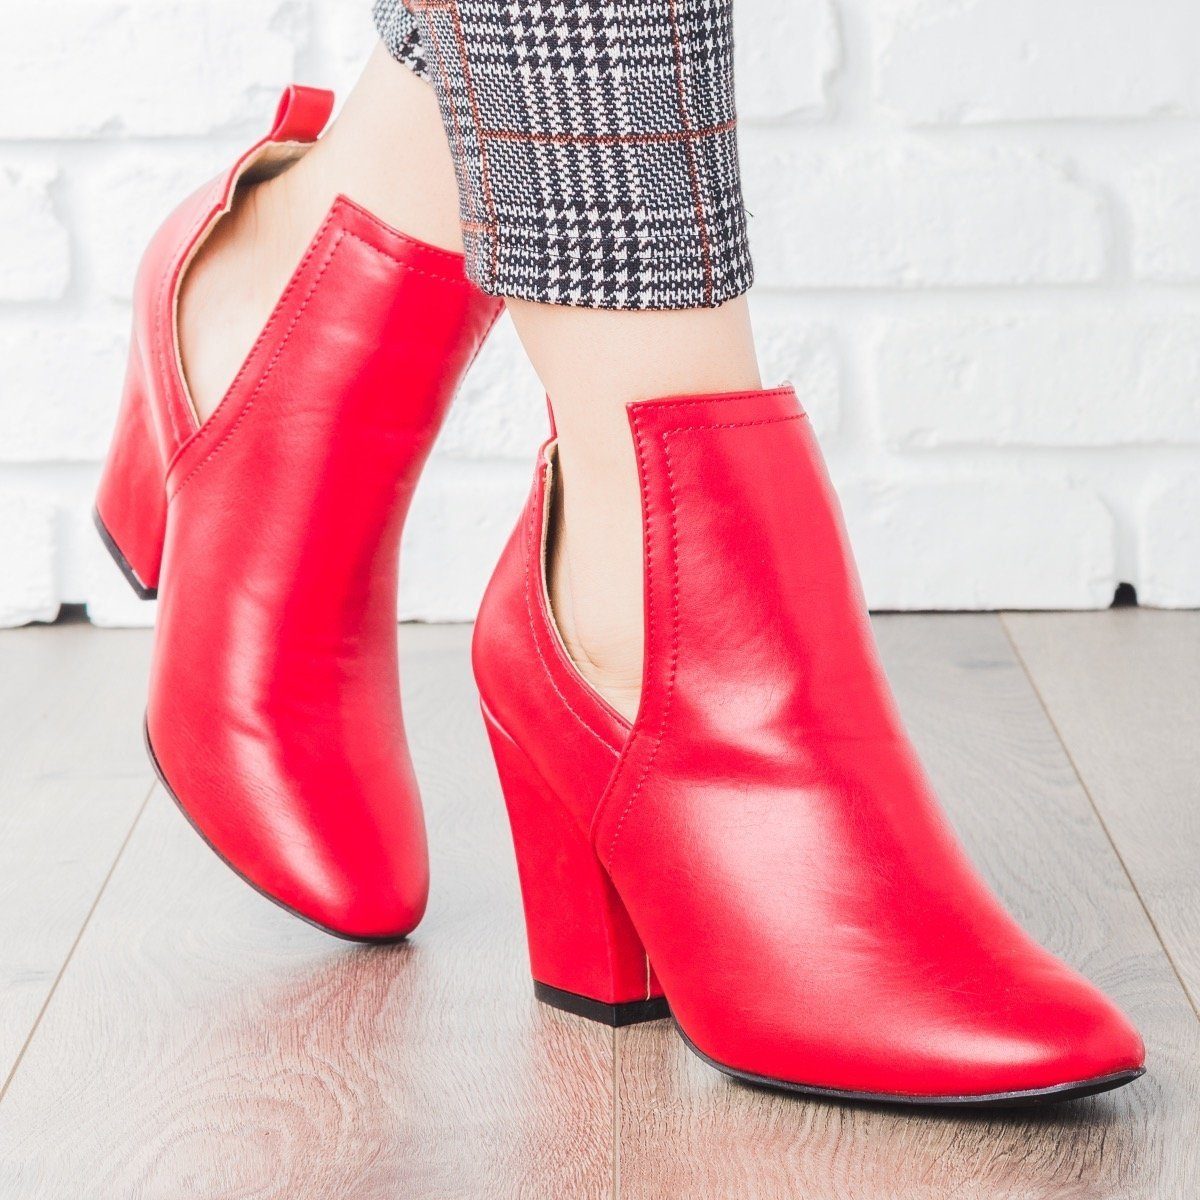 red bootie heels